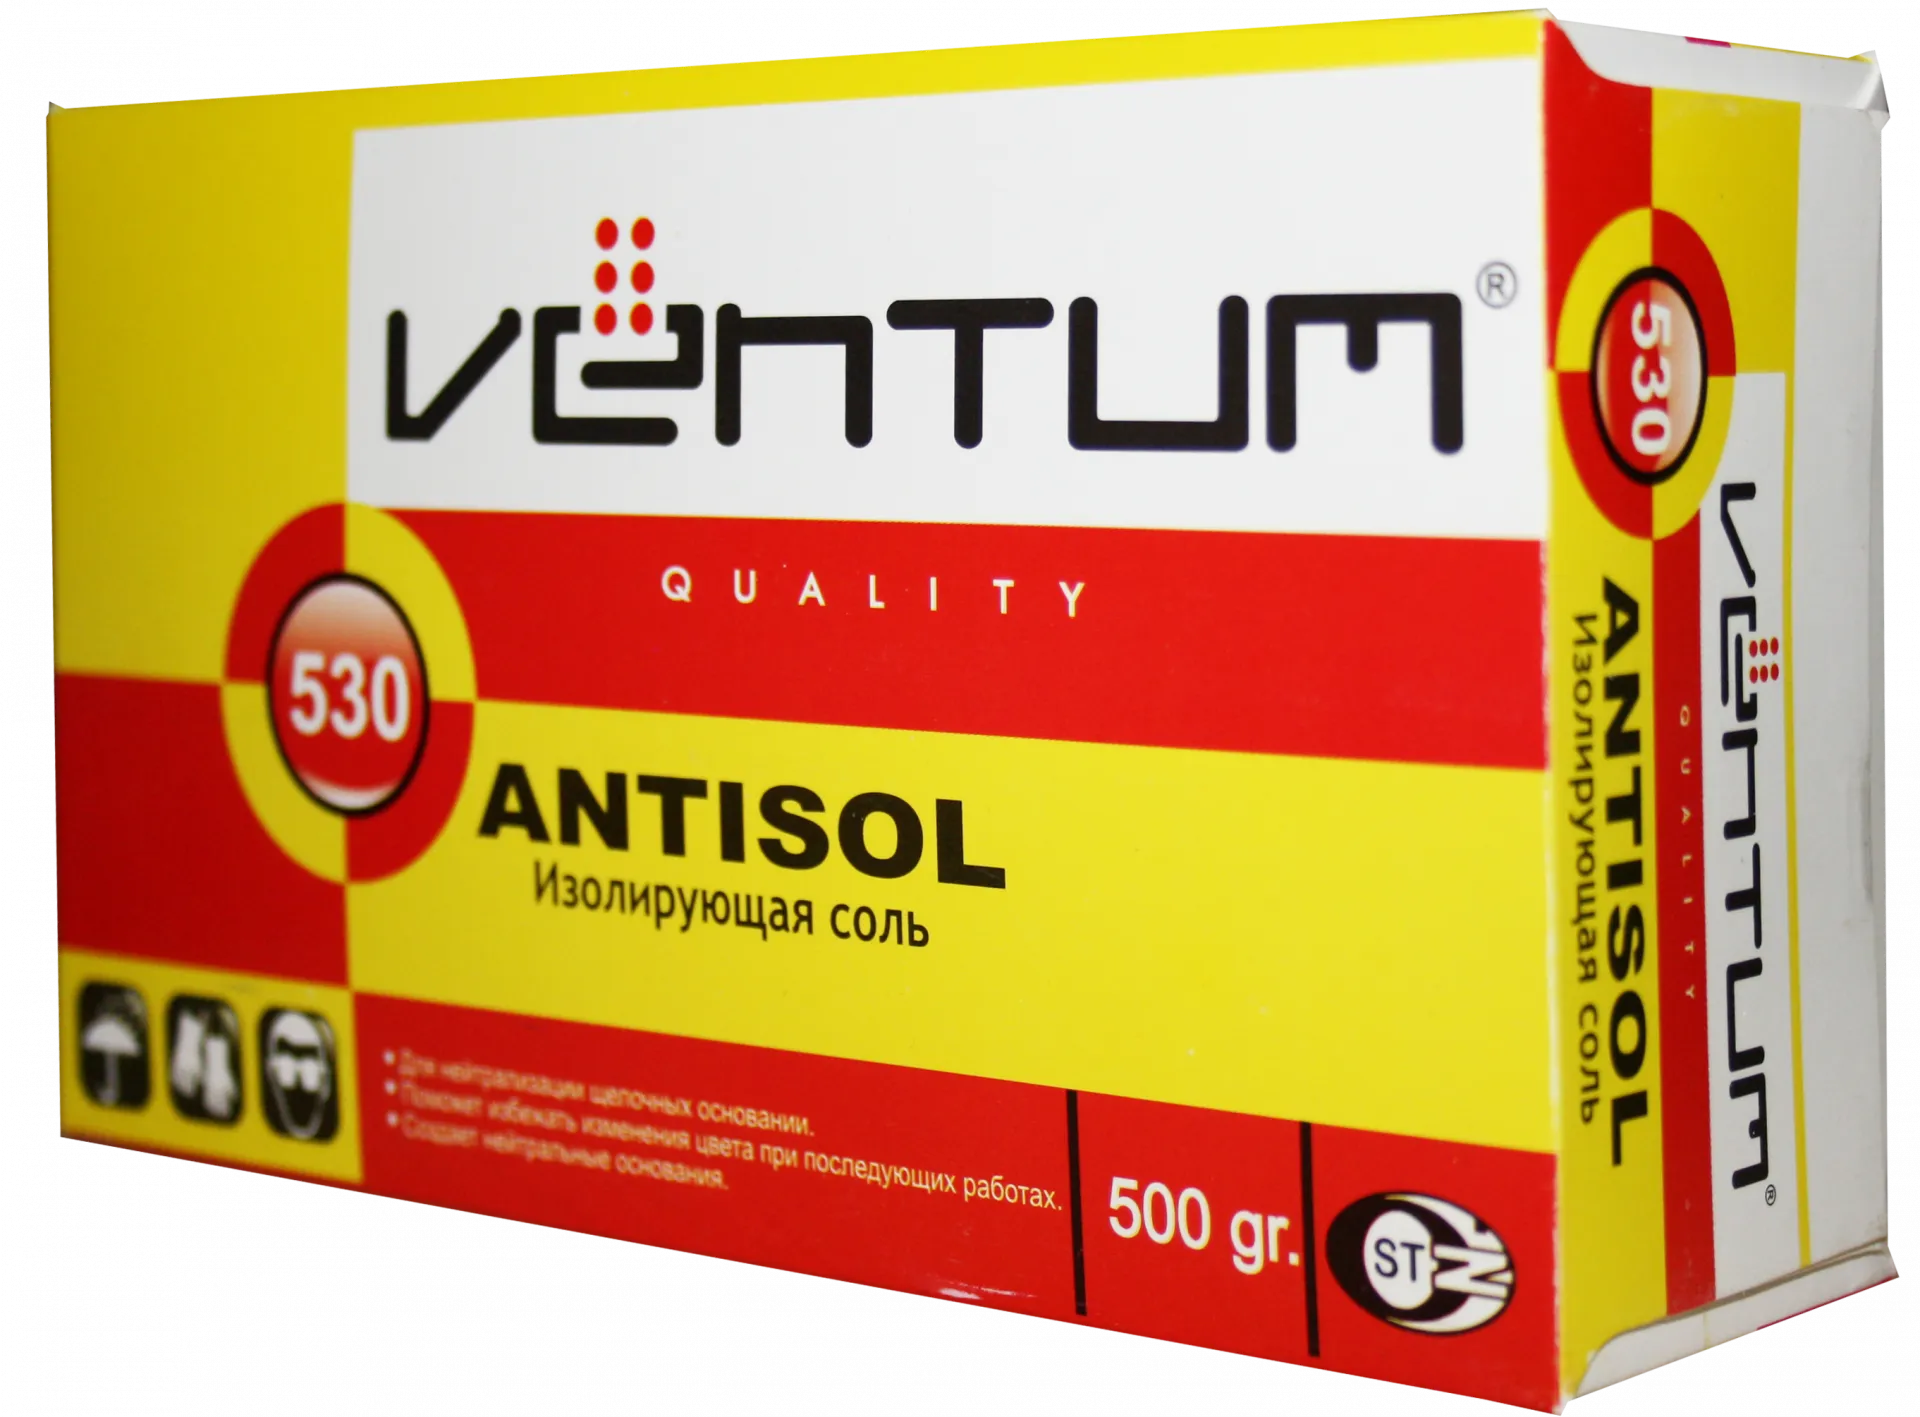 Изолирующая соль Вентум ANTISOL - 530 500 гр#1